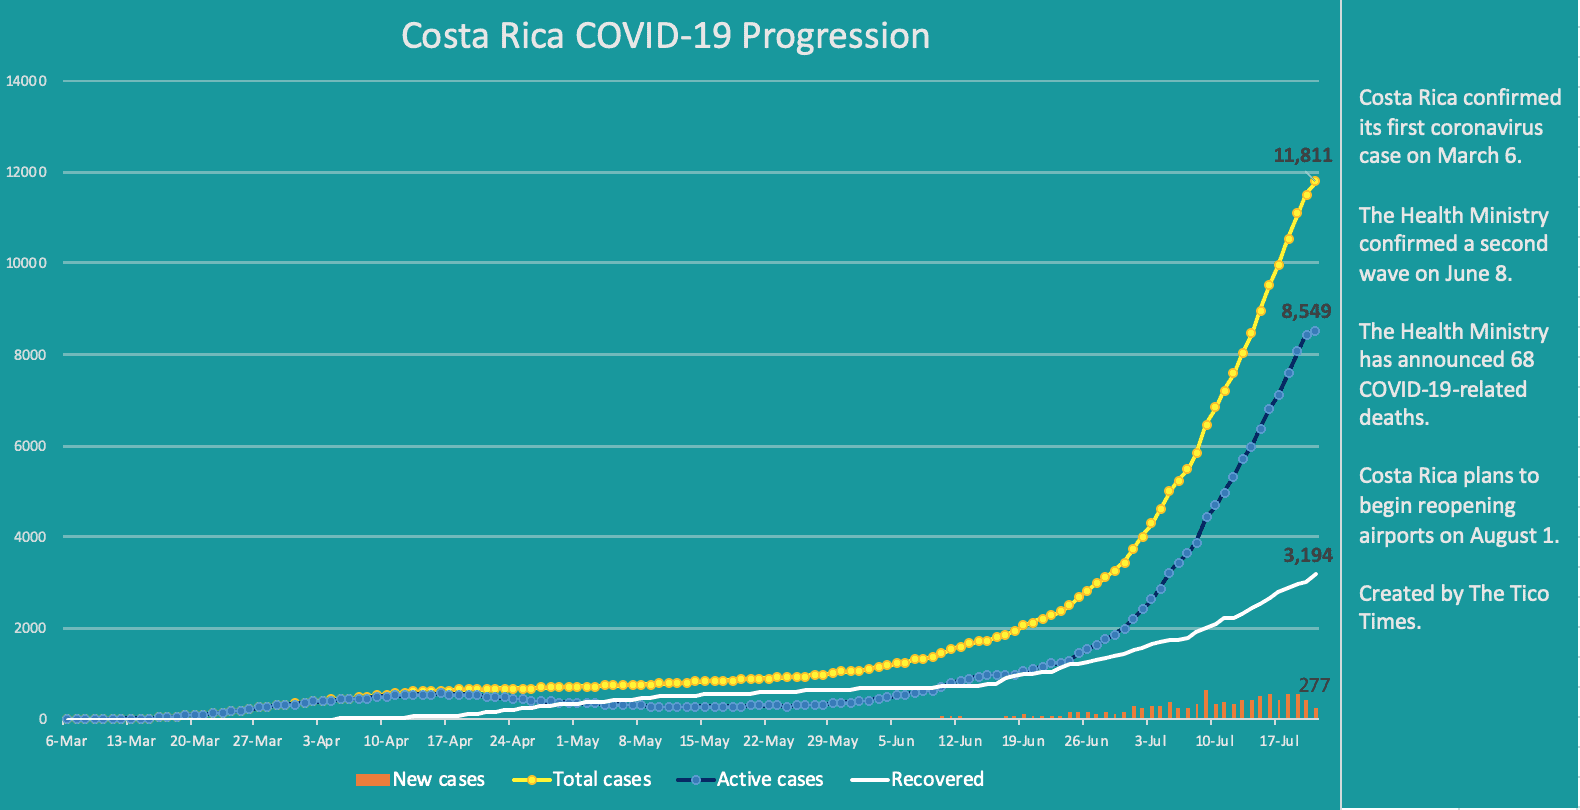 Costa Rica coronavirus data for July 21, 2020